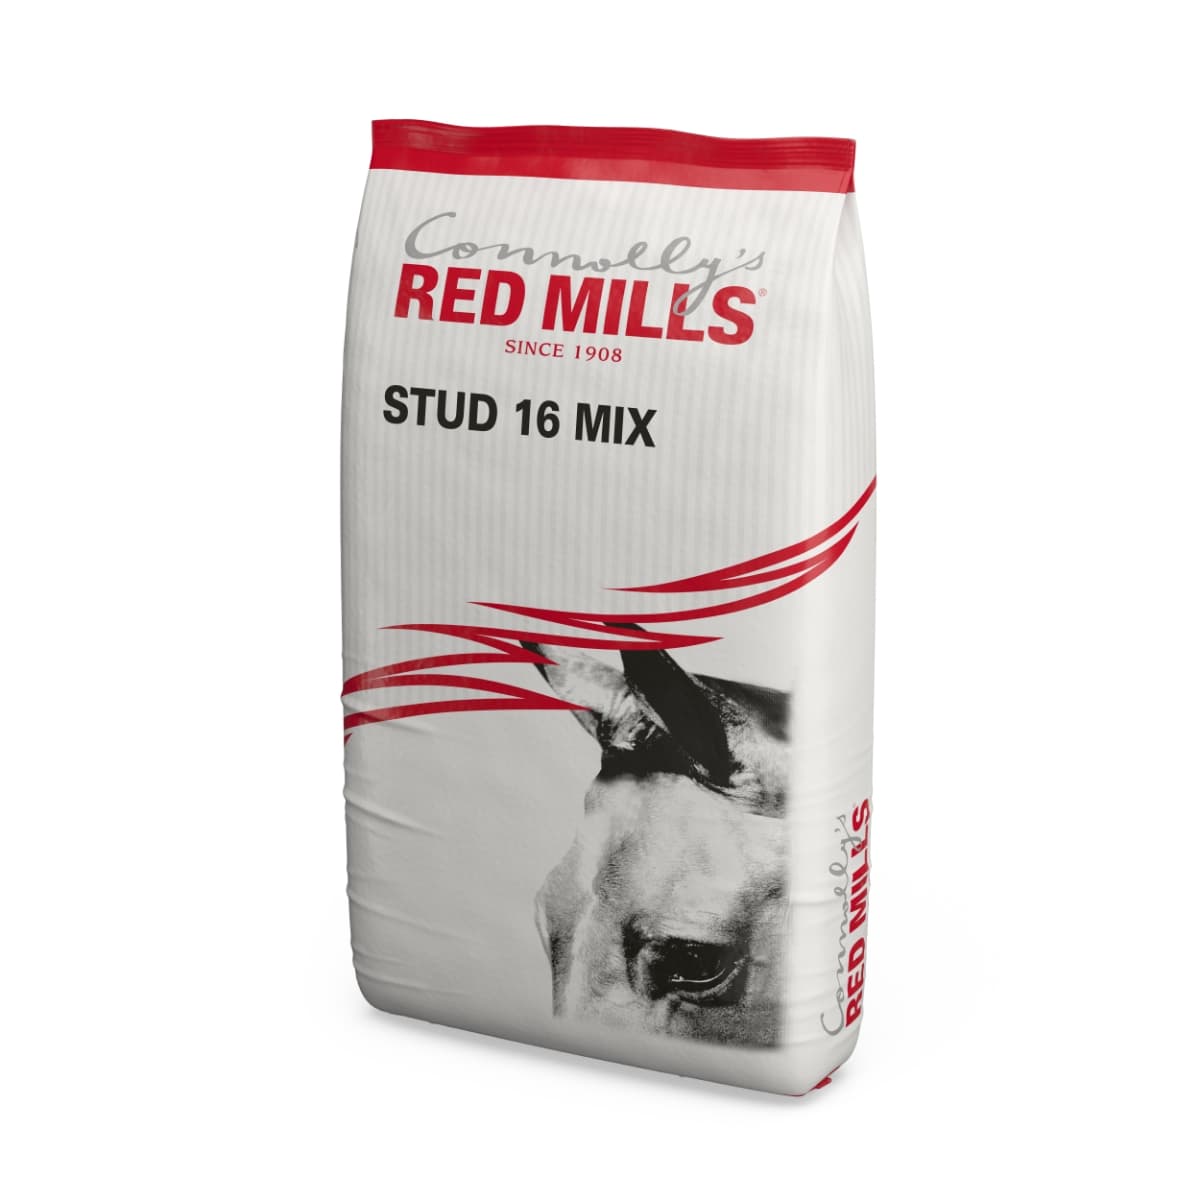 RED MILLS Stud 16 Mix